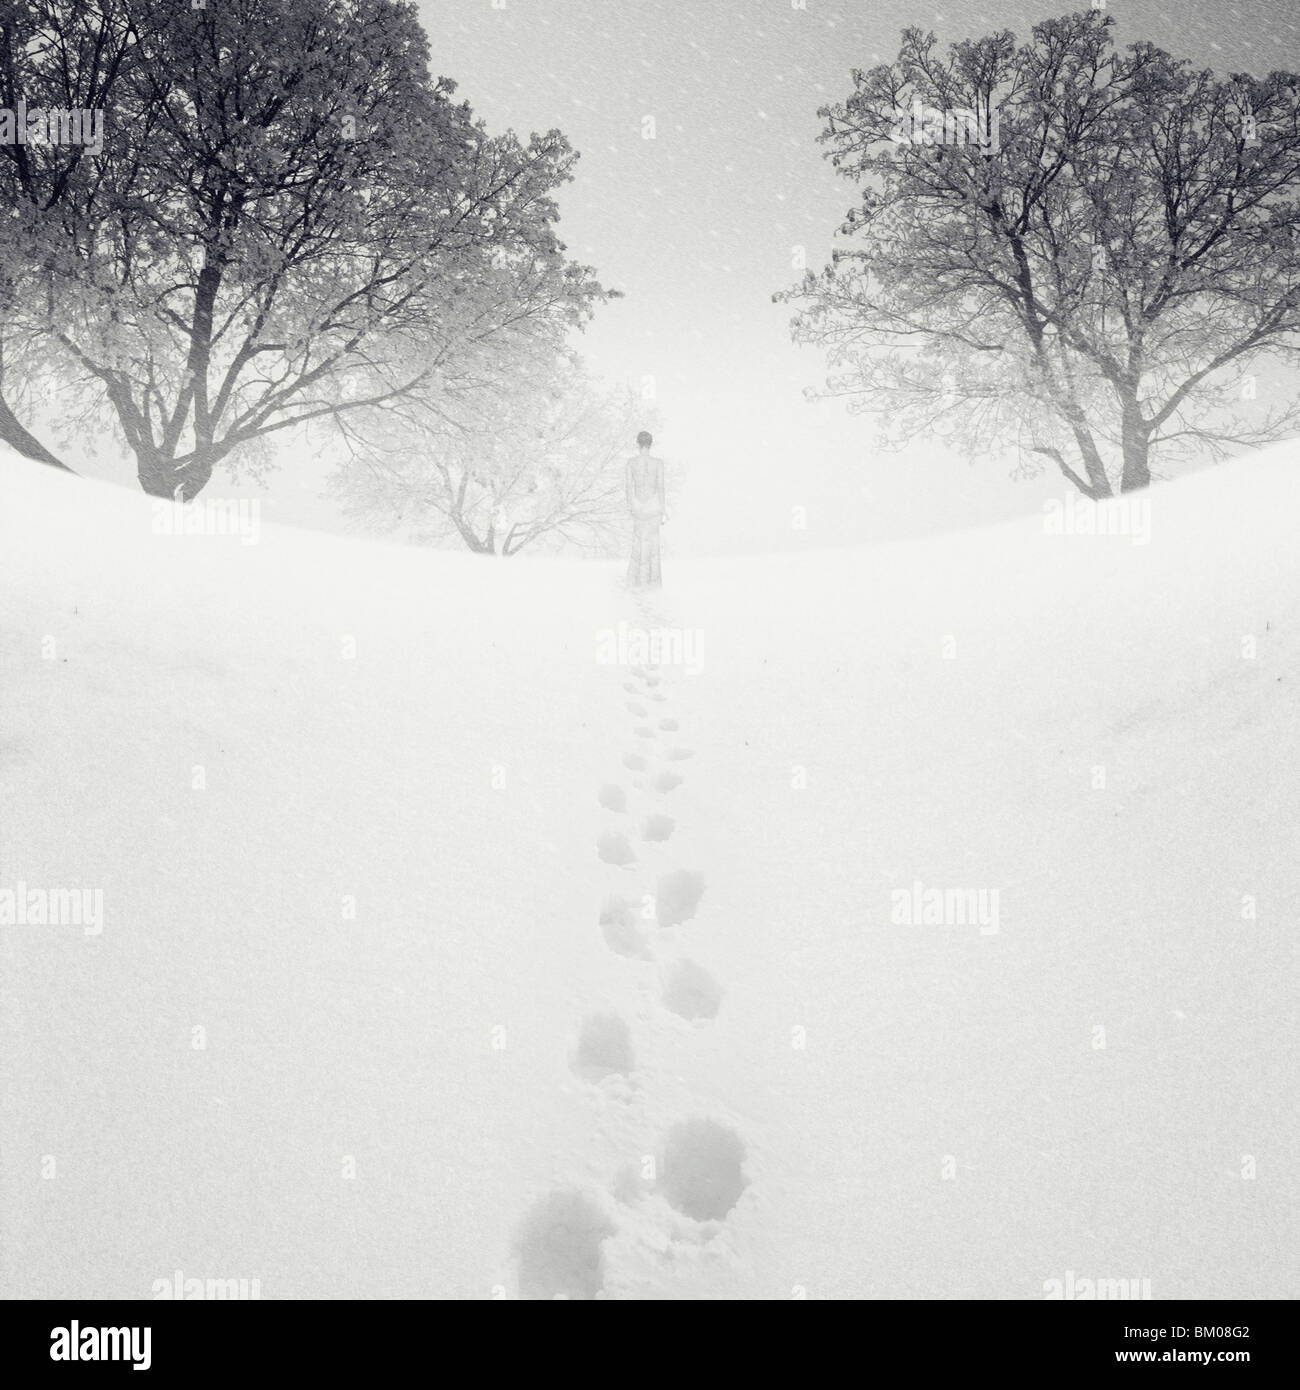 Una solitaria figura maschile in piedi nella neve nella distanza rivolta lontano dalla telecamera in prossimità di alberi Foto Stock